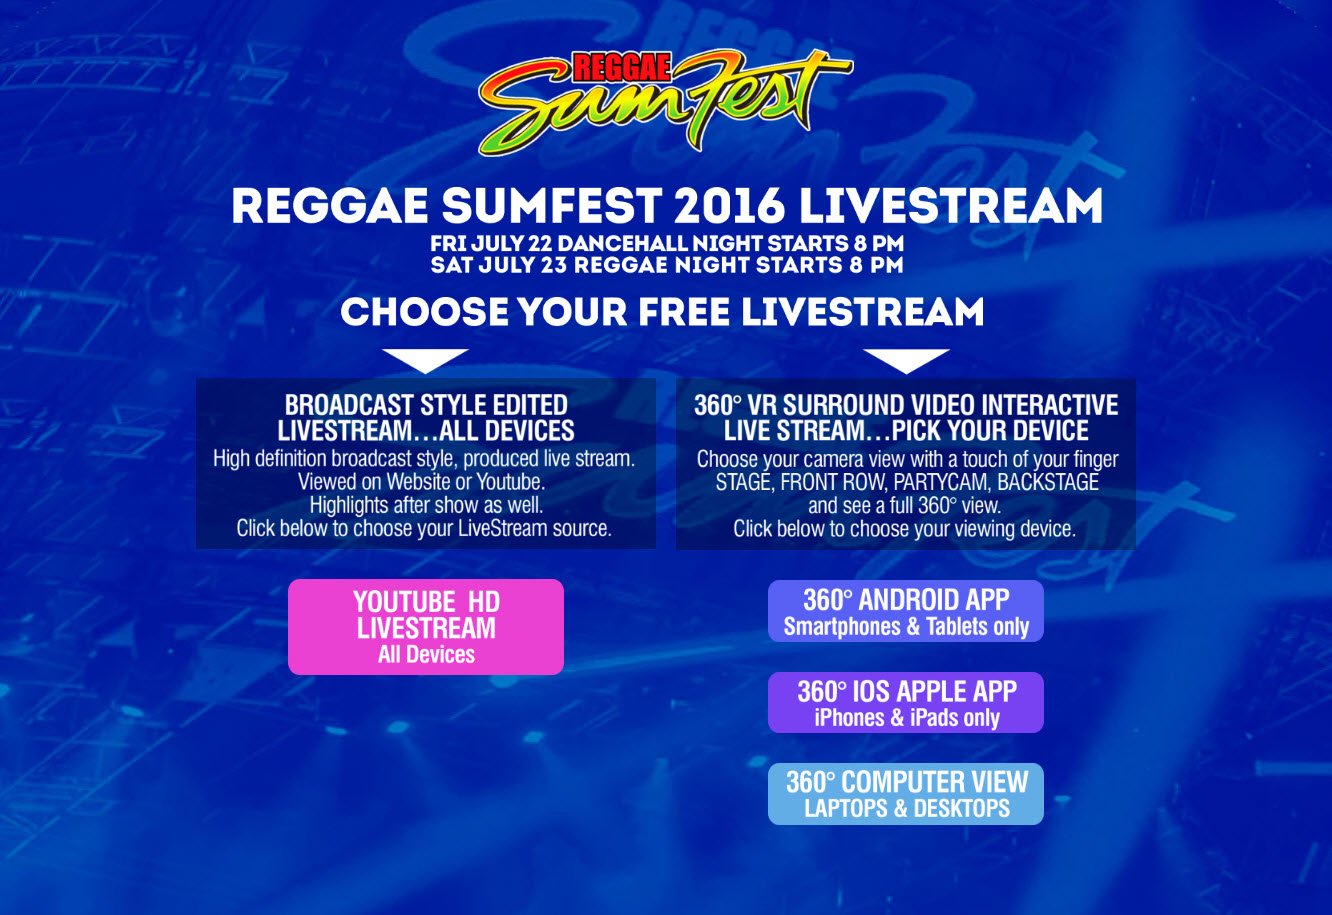 Reggae Sumfest Livestream